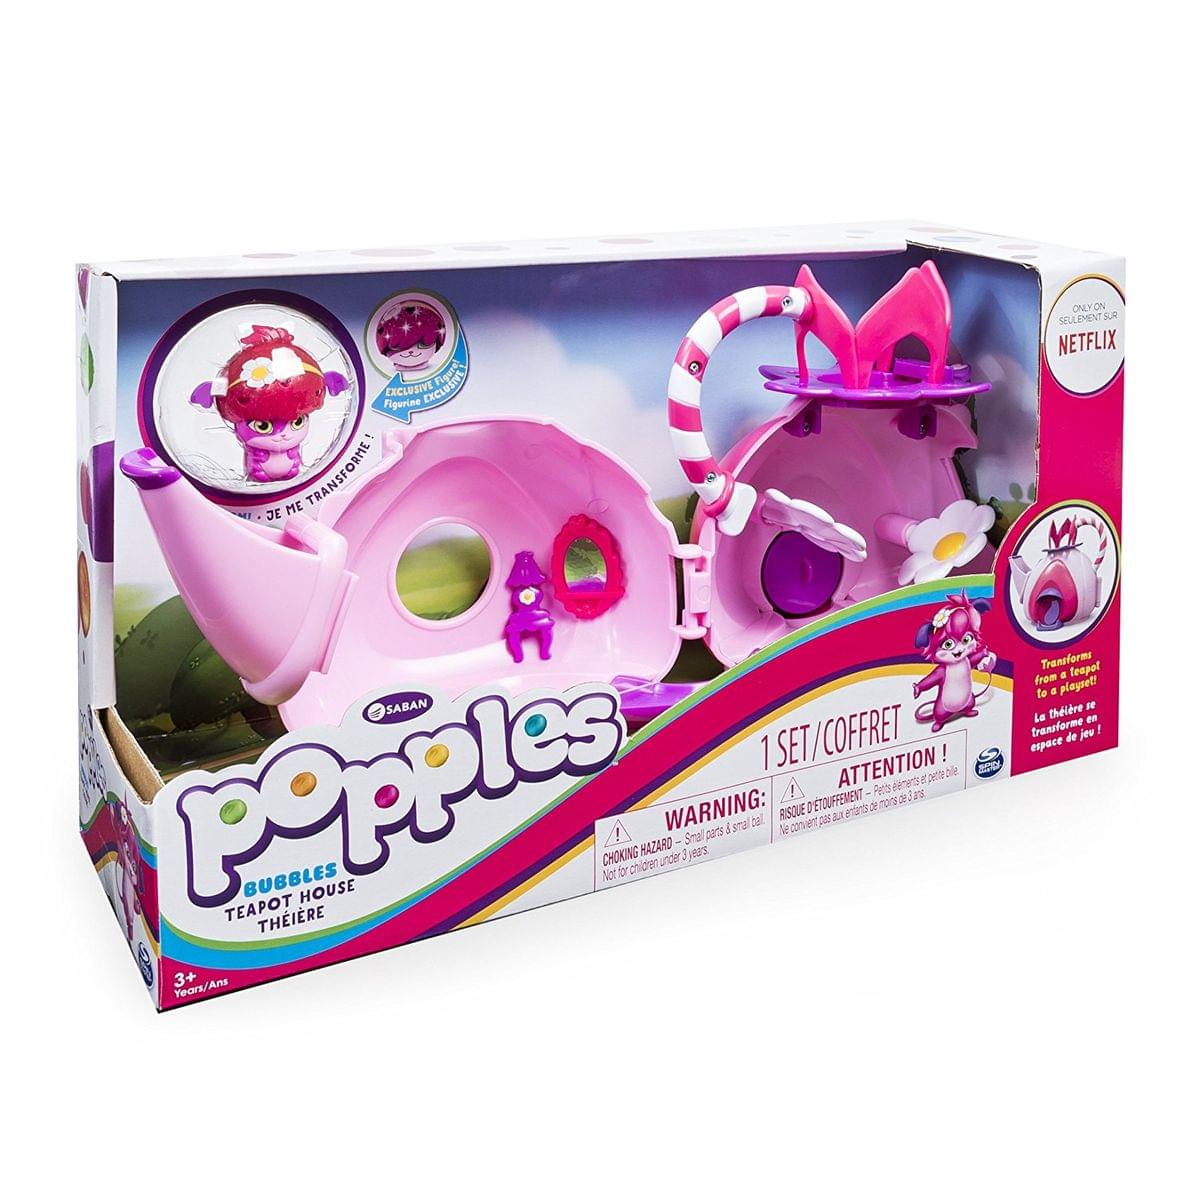 Popples Bubbles Tea House Playset